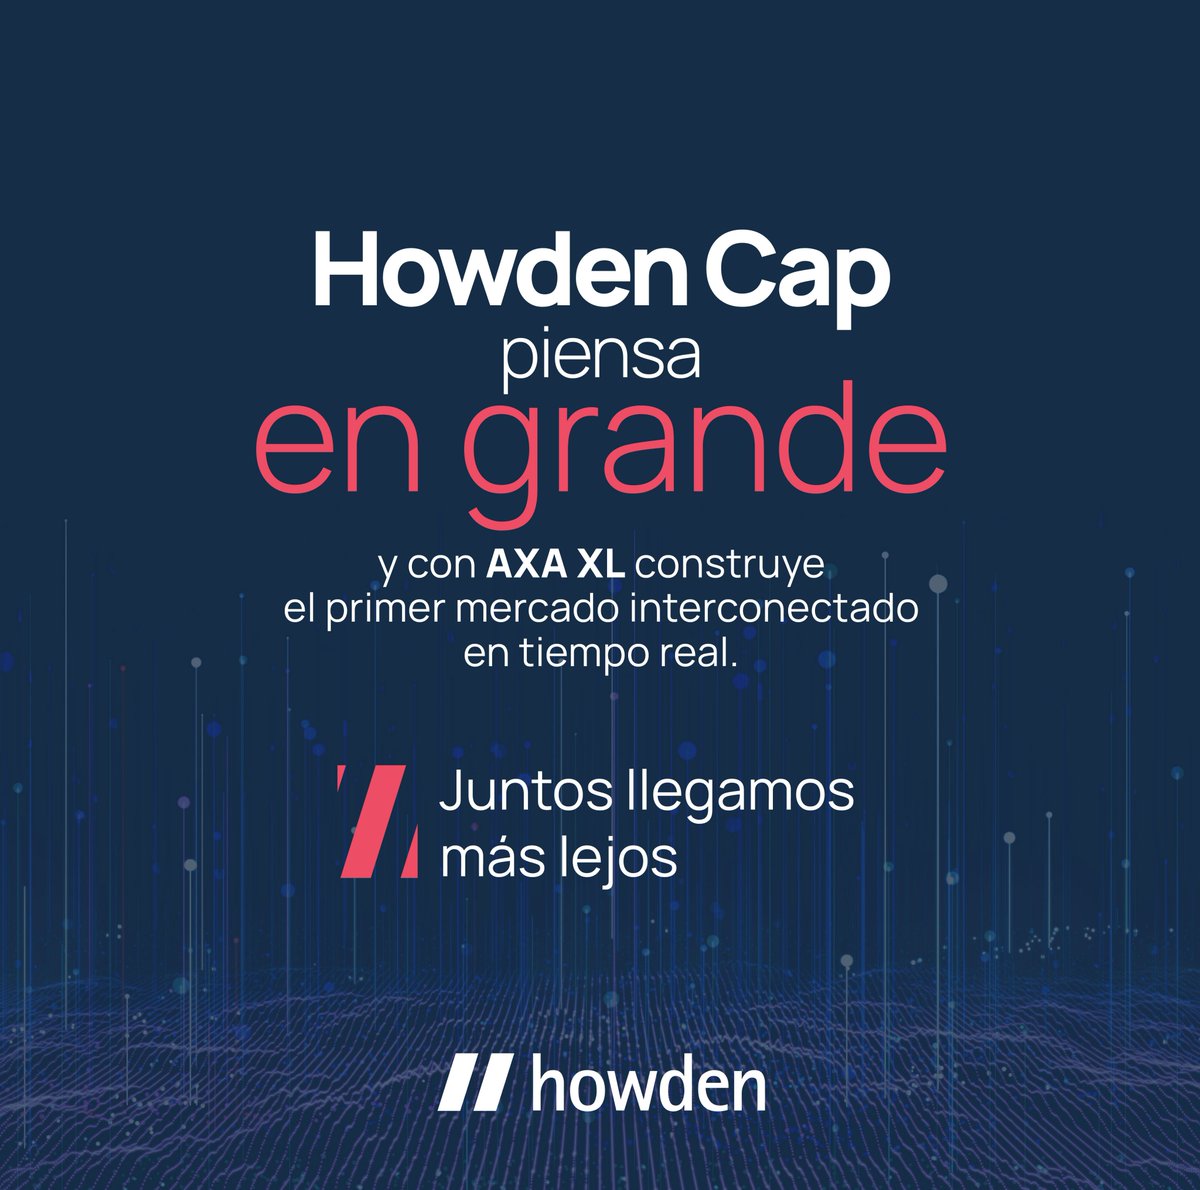 #HowdenCAP y #AxaXL trabajan para mantener un mercado interconectado y eficiente para nuestros #Clientes.

¡Conoce más aquí! 

bit.ly/3Jhd2oD 

#JuntosLlegamosMásLejos